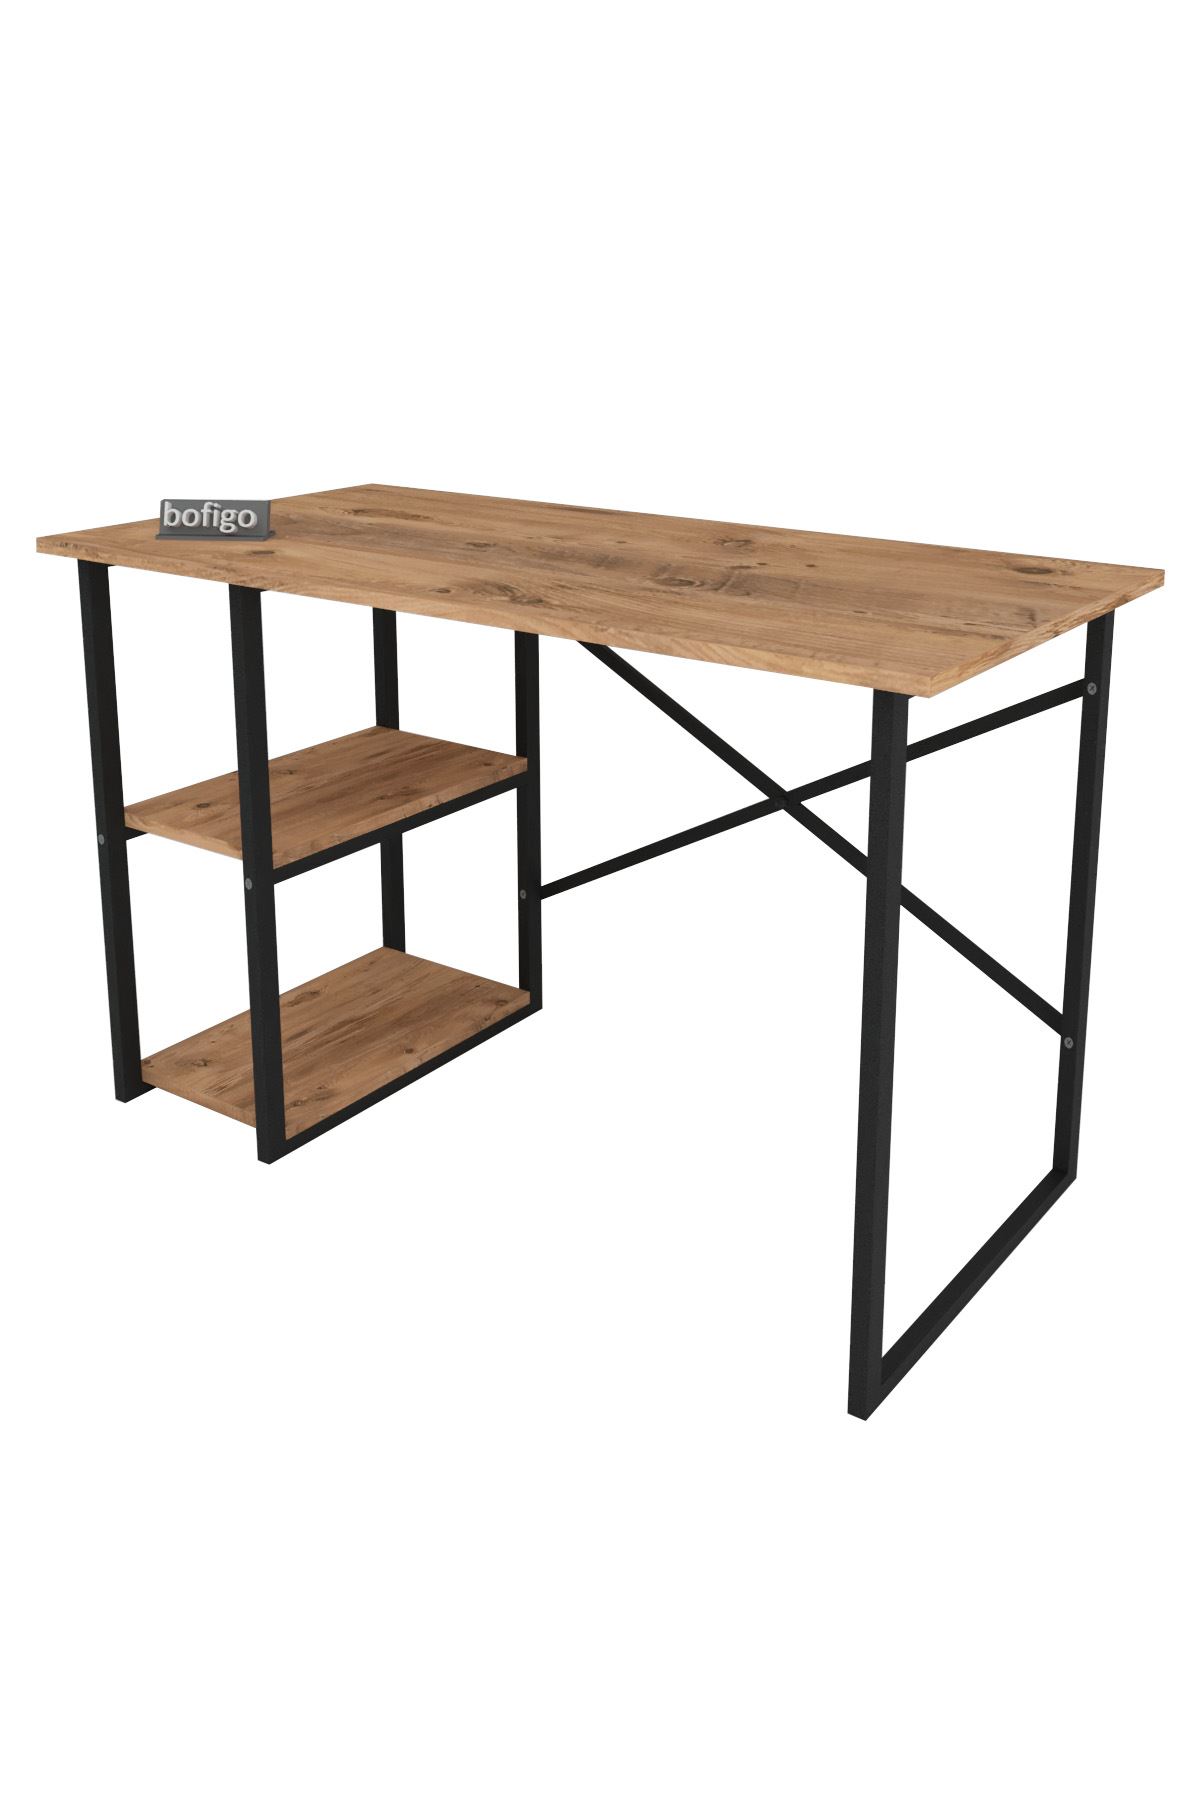 Bofigo 2 Shelf Study Desk 60x120 cm  Pine